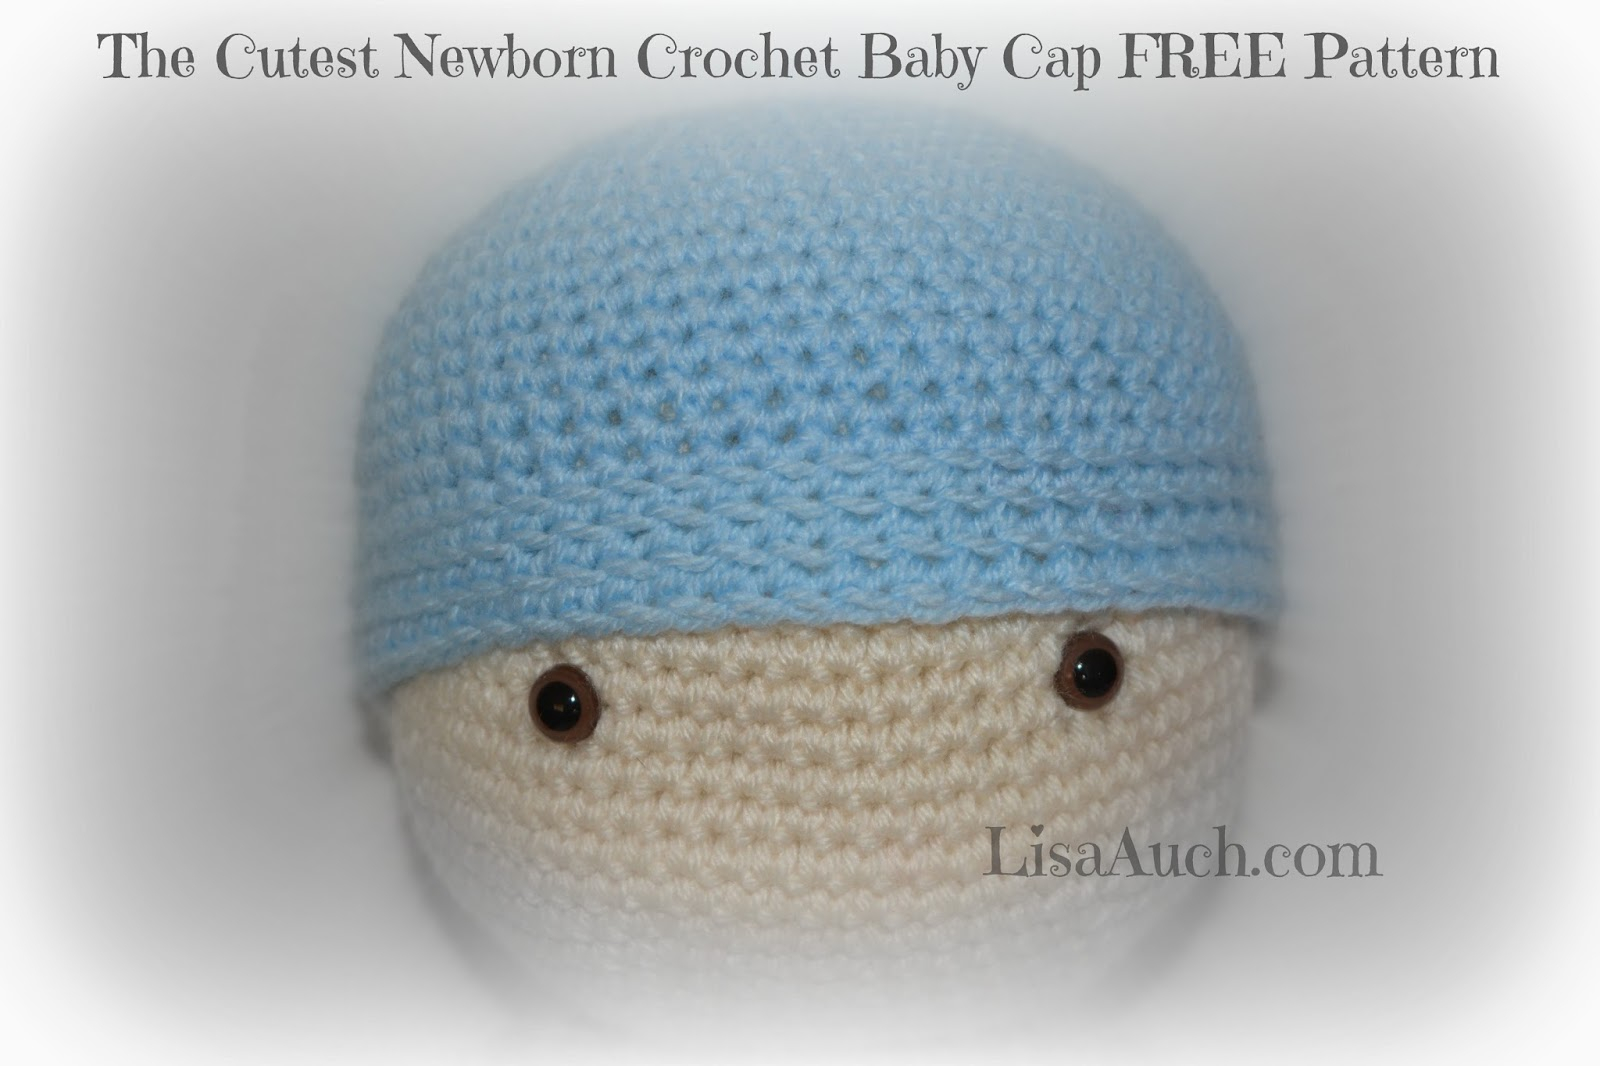 Free Crochet Baby Hats Patterns Easy Easy Free Ba Crochet Hat Pattern Cosy Smart Newborn Crochet Cap